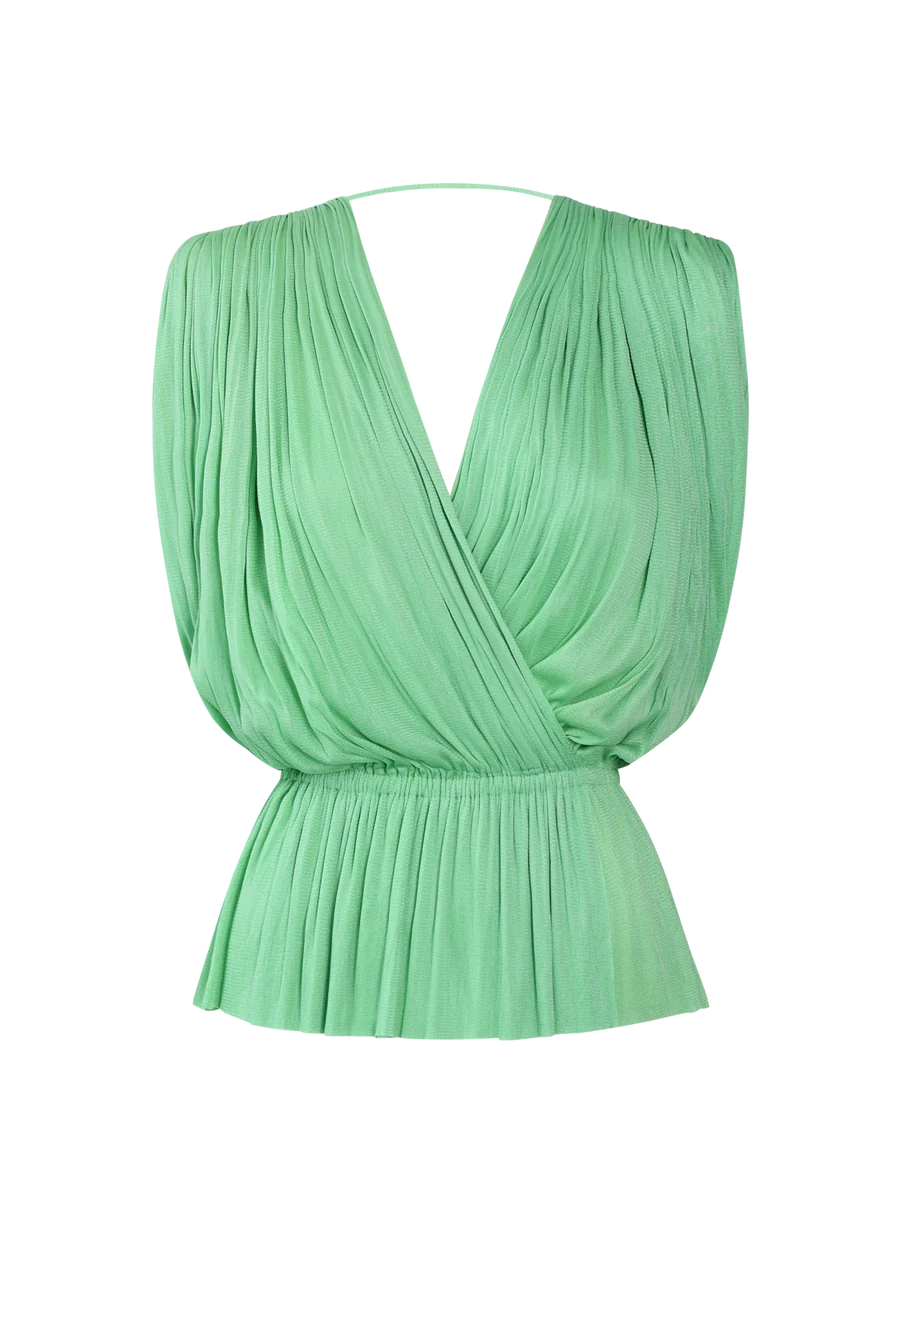 Hanne Bloch Mint Silk Tulle Top Green